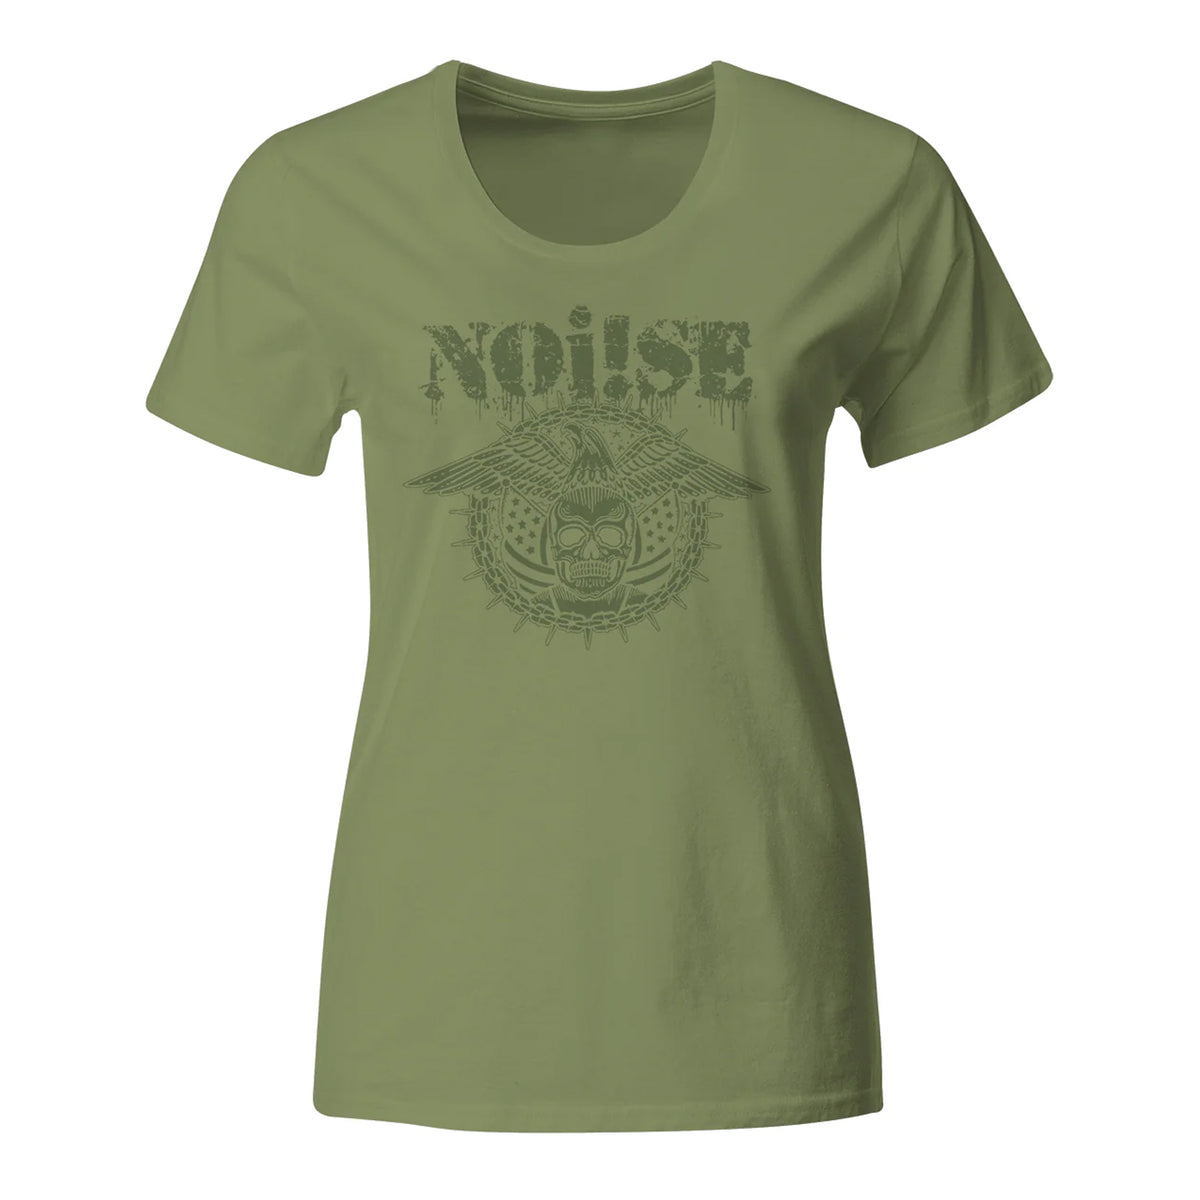 NOi!SE - Skull Eagle Logo - Green - T-Shirt - Fitted